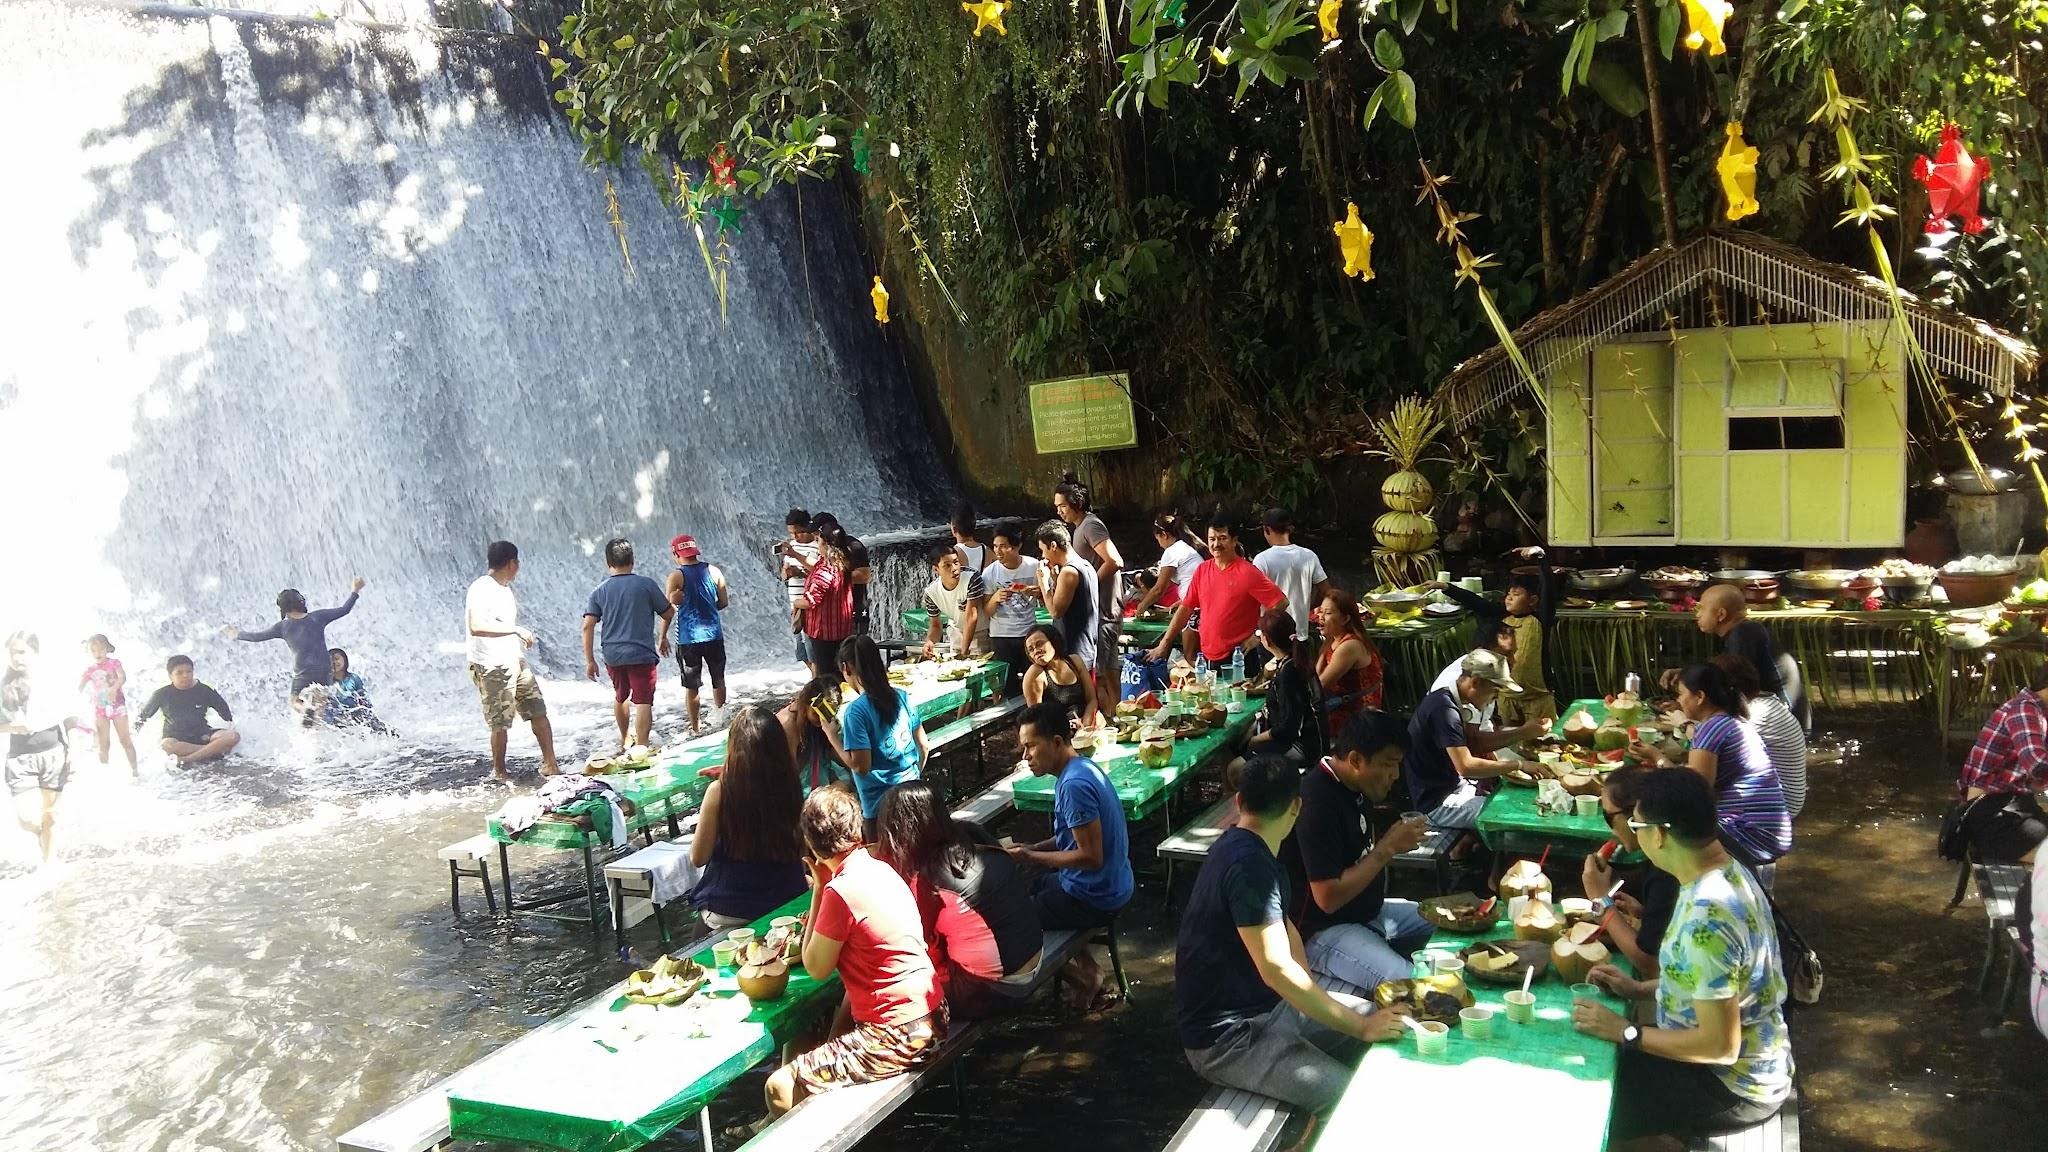 Ăn ngon thêm vạn lần với nhà hàng dưới chân thác độc lạ ở Philippines - 2